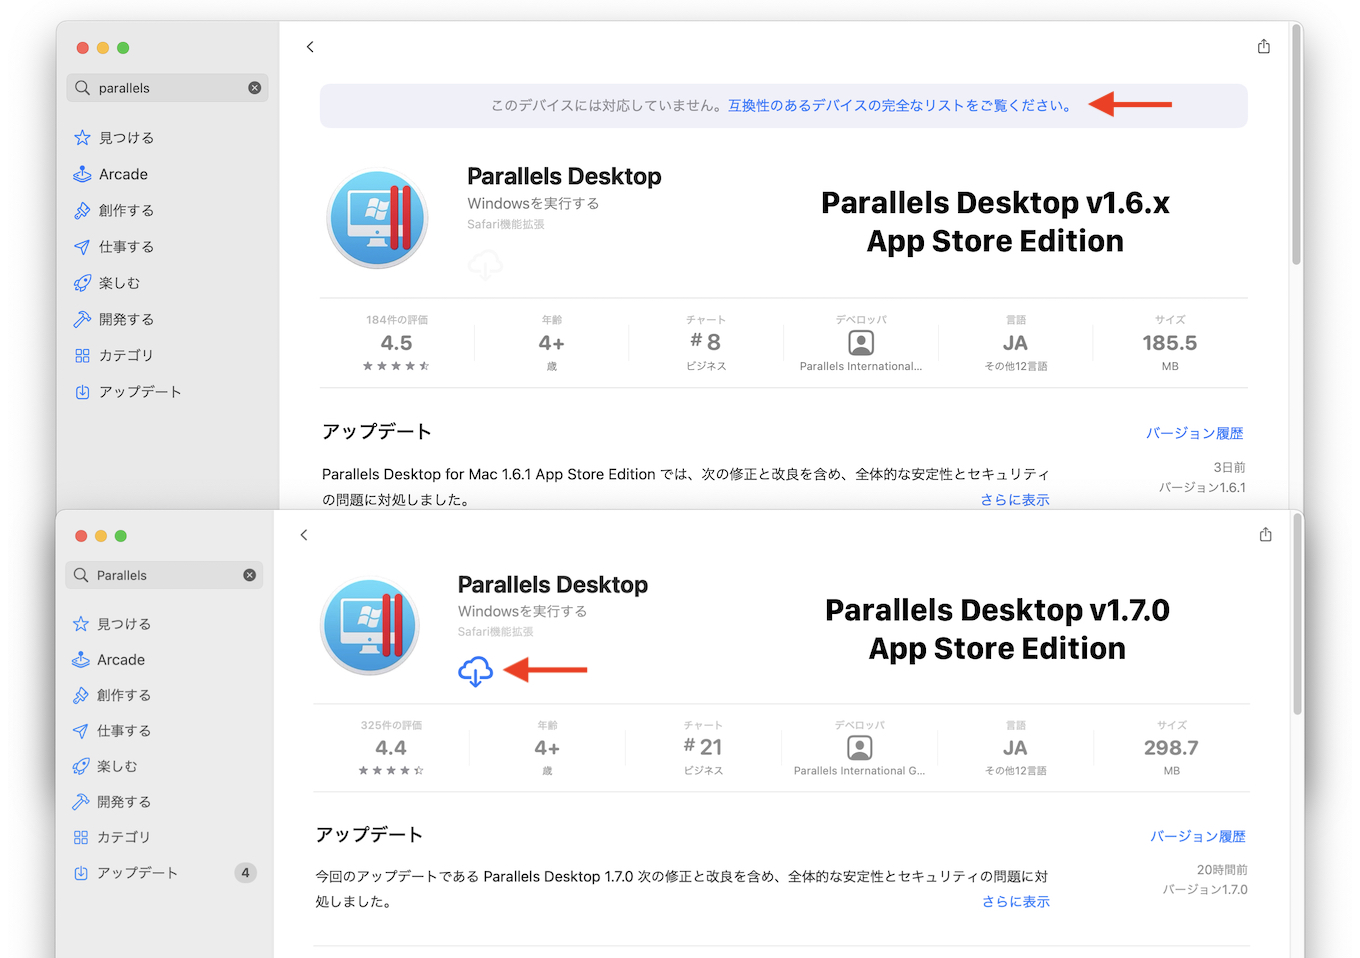 Parallels Desktop v1.7.0 App Store Edition